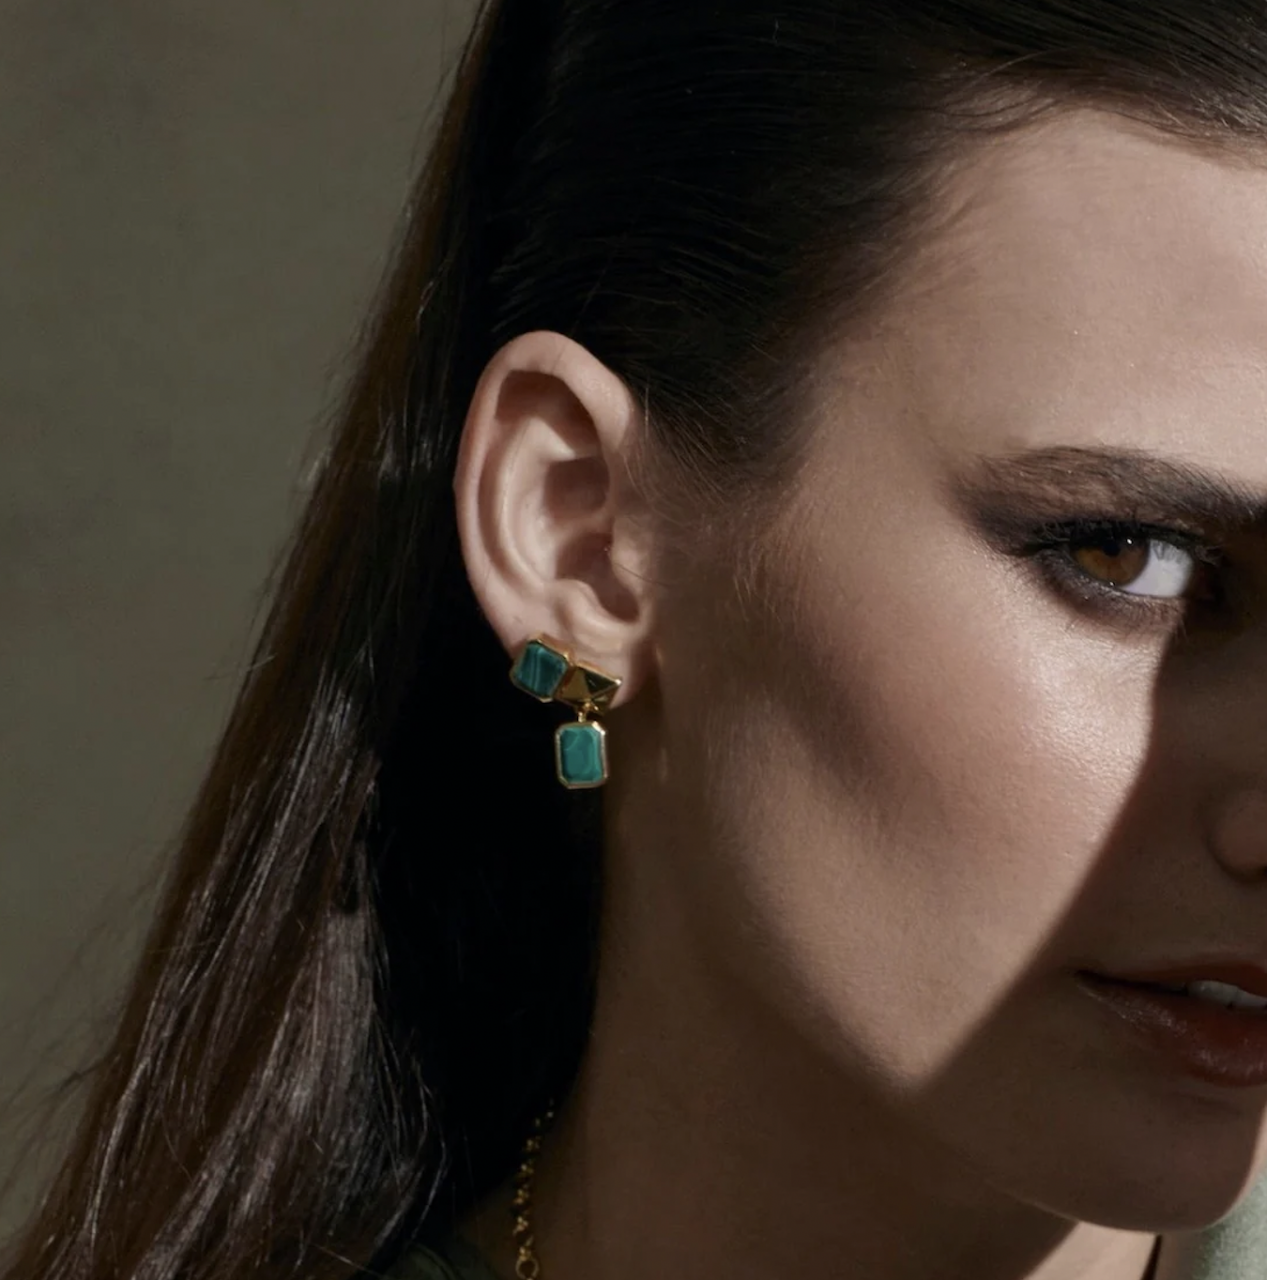 Silk & Steel Athena Drop Earrings with Bezel Set Pendant in Green Malachite